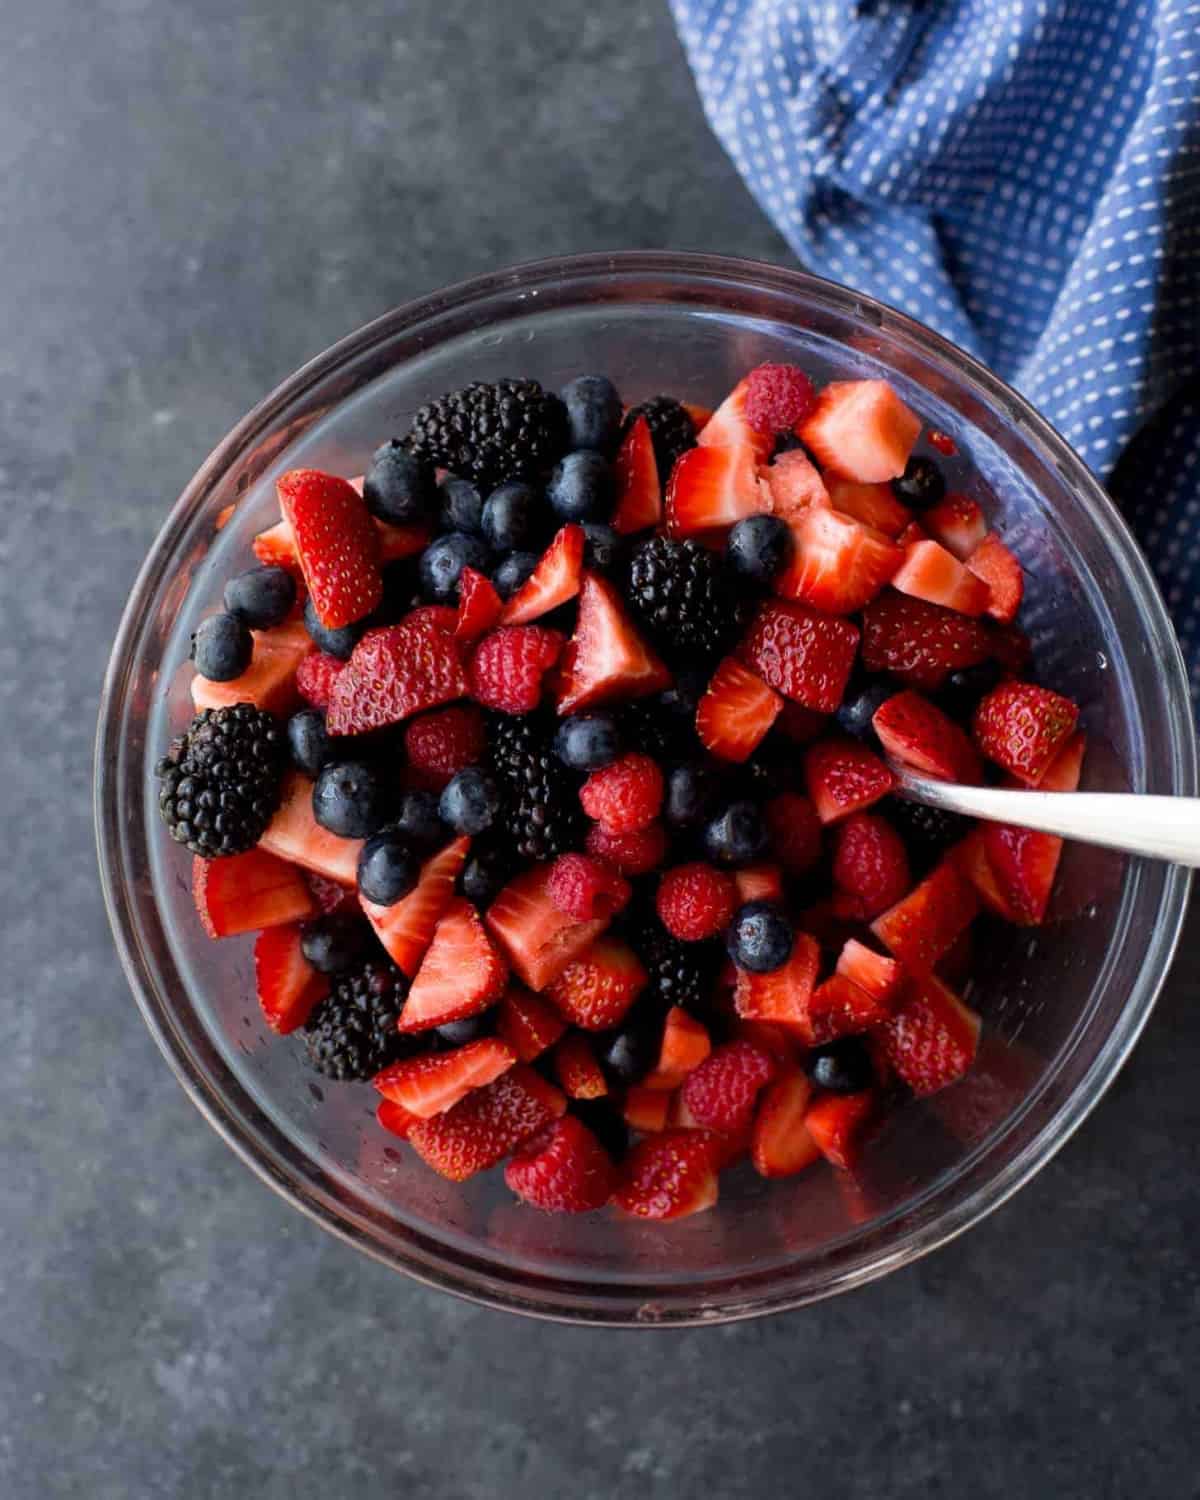 a bowl of summer berries - blackberries, strawberries, blueberries, raspberries